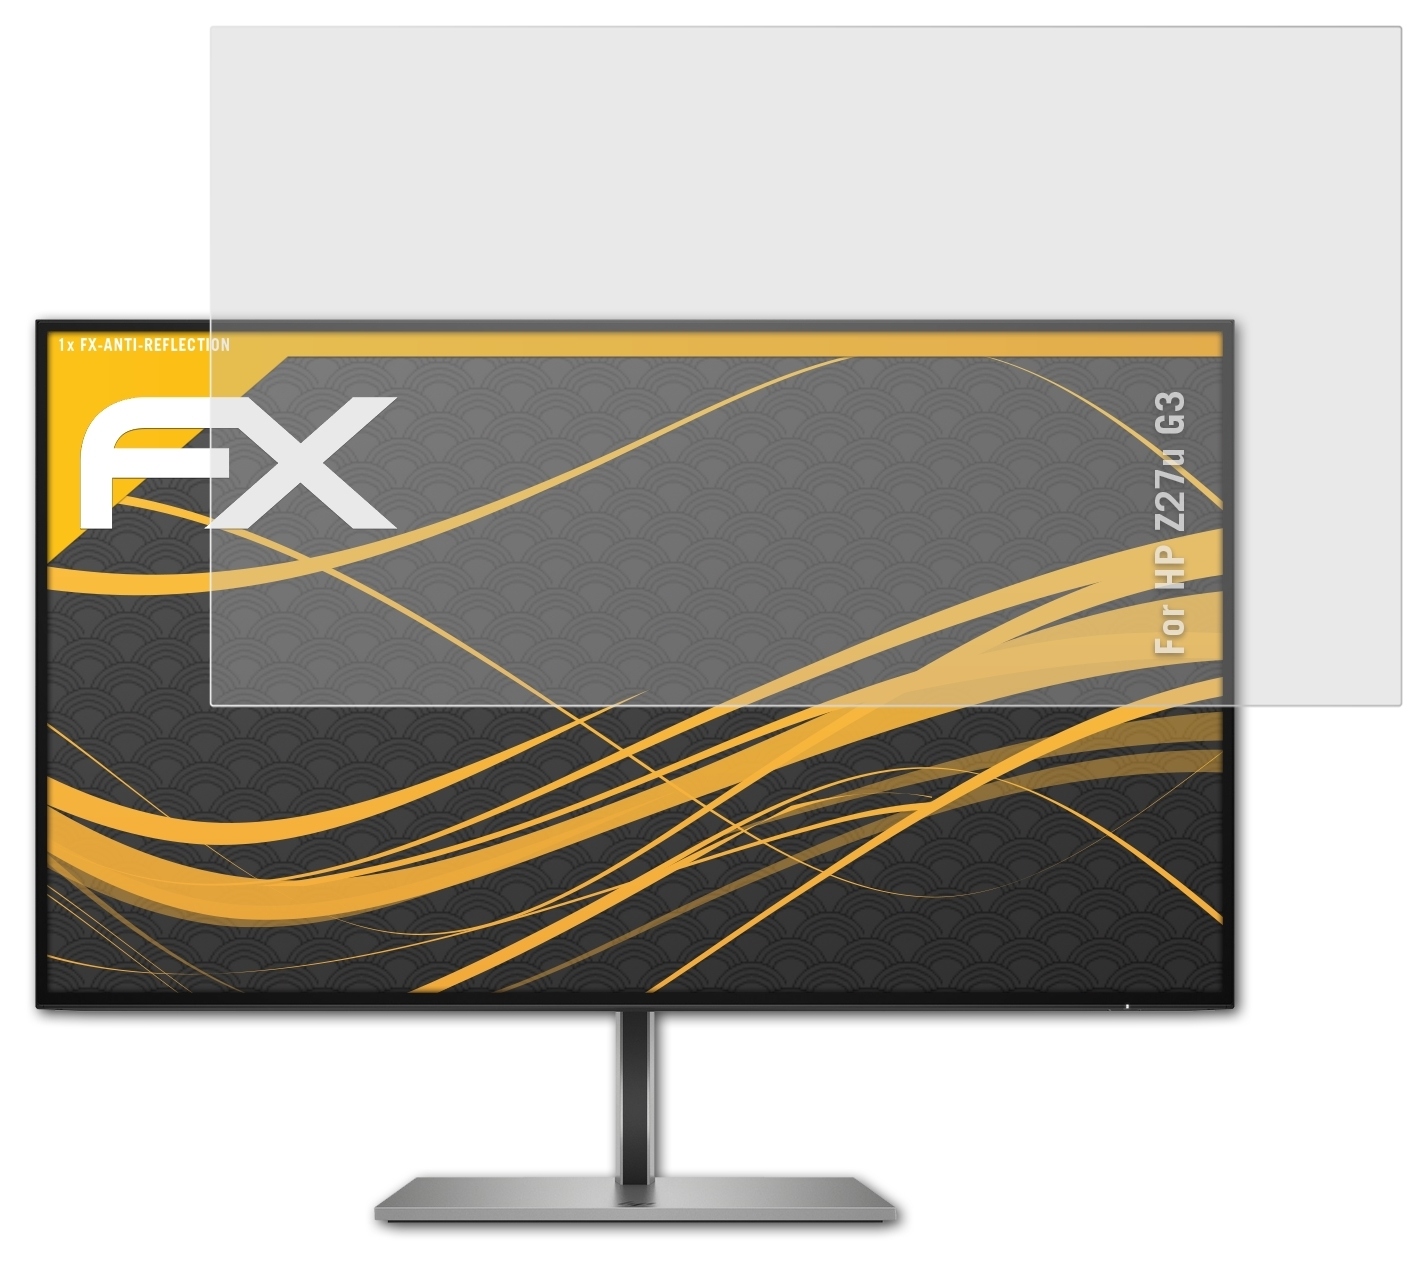 ATFOLIX FX-Antireflex Displayschutz(für HP Z27u G3)